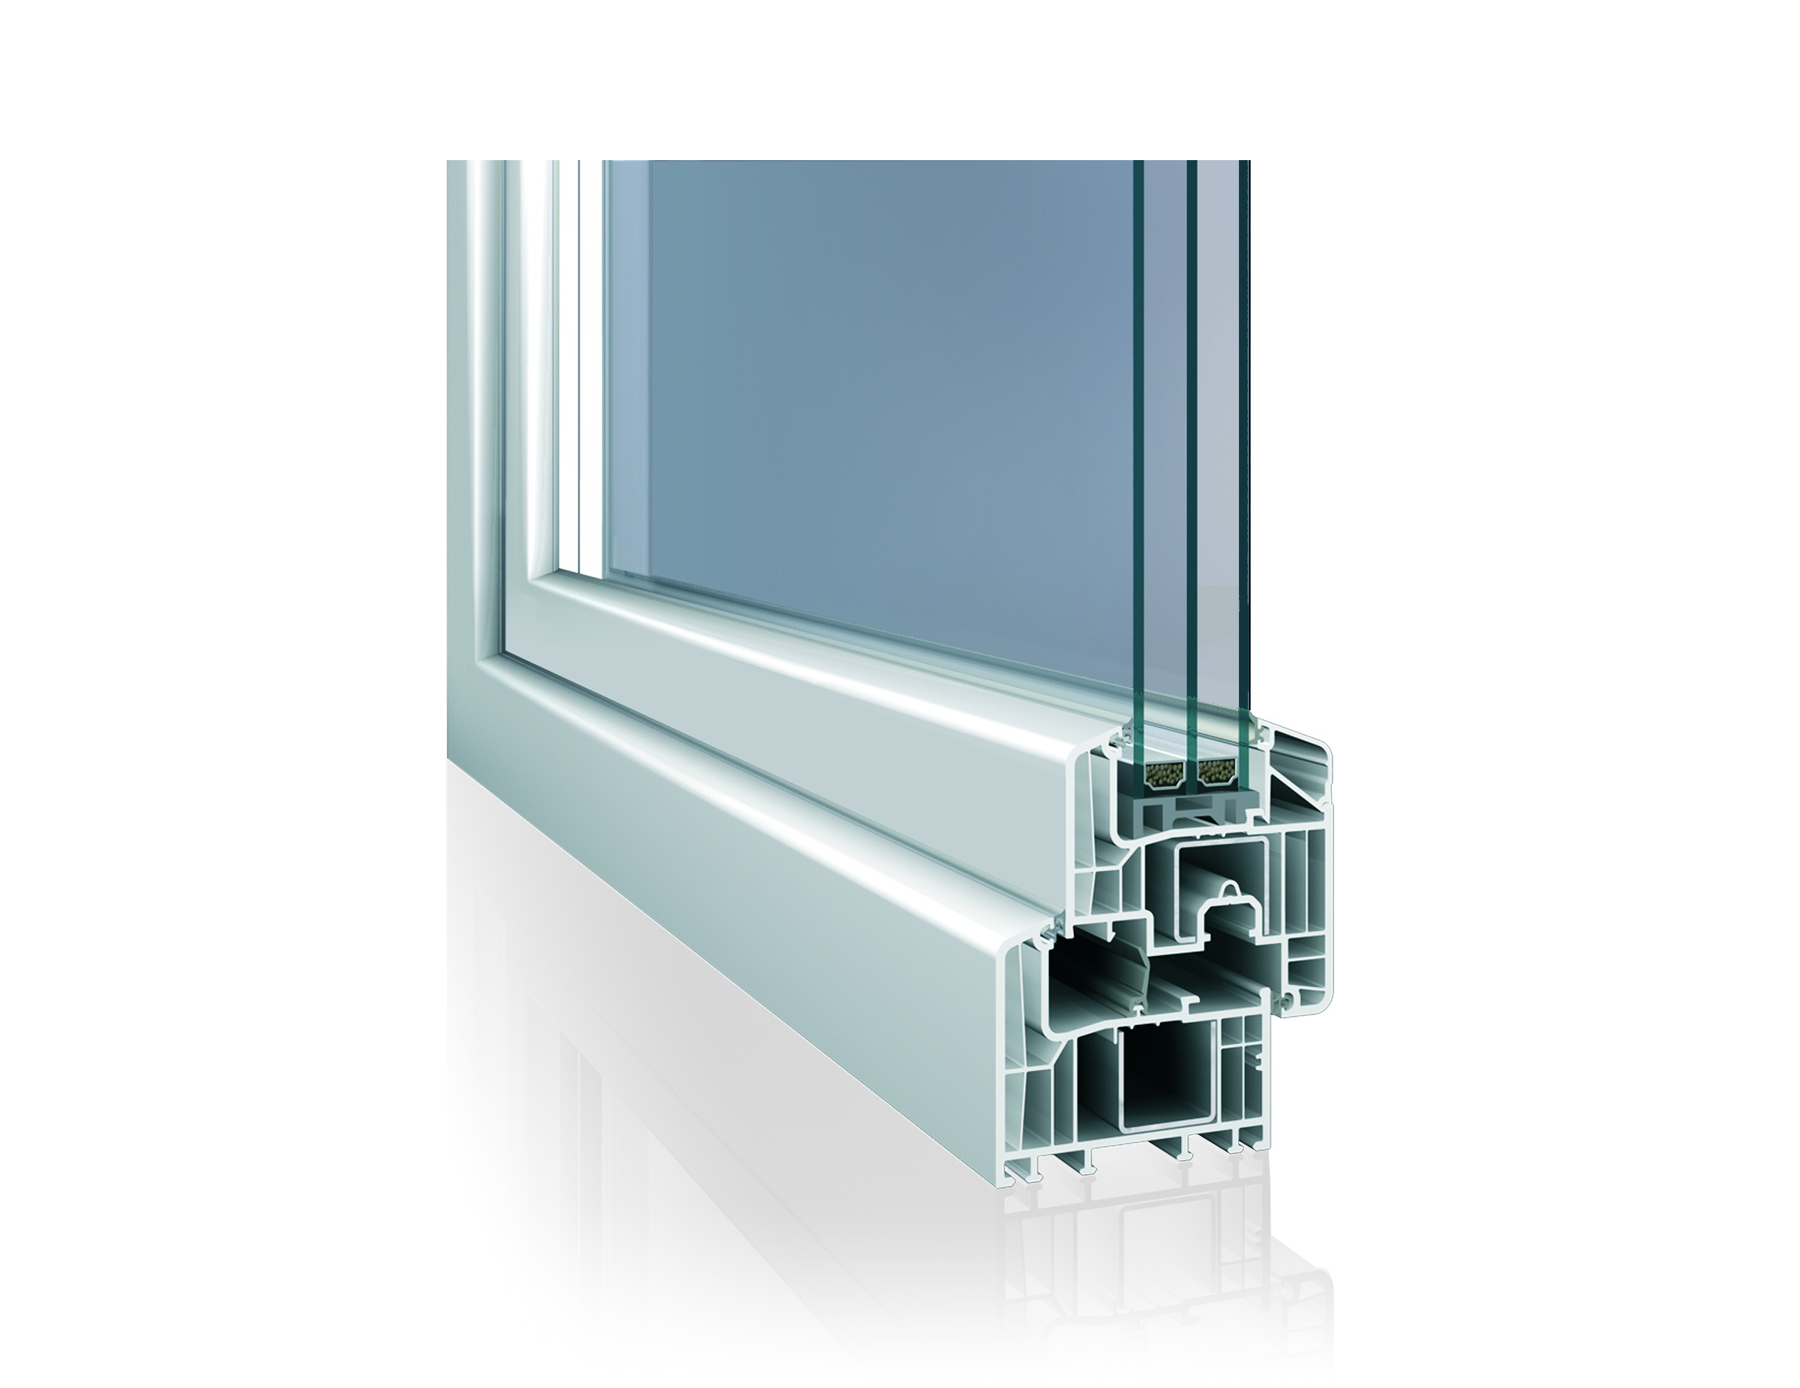 Nové hliníkové opláštění okenních profilů Eforte poskytuje dokonalý vzhled hliníku při zachování všech předností plastového okna. Další výhodou jsou prakticky neomezené barevné varianty, kterými lze hliníkové opláštění opatřit. (Inoutic)